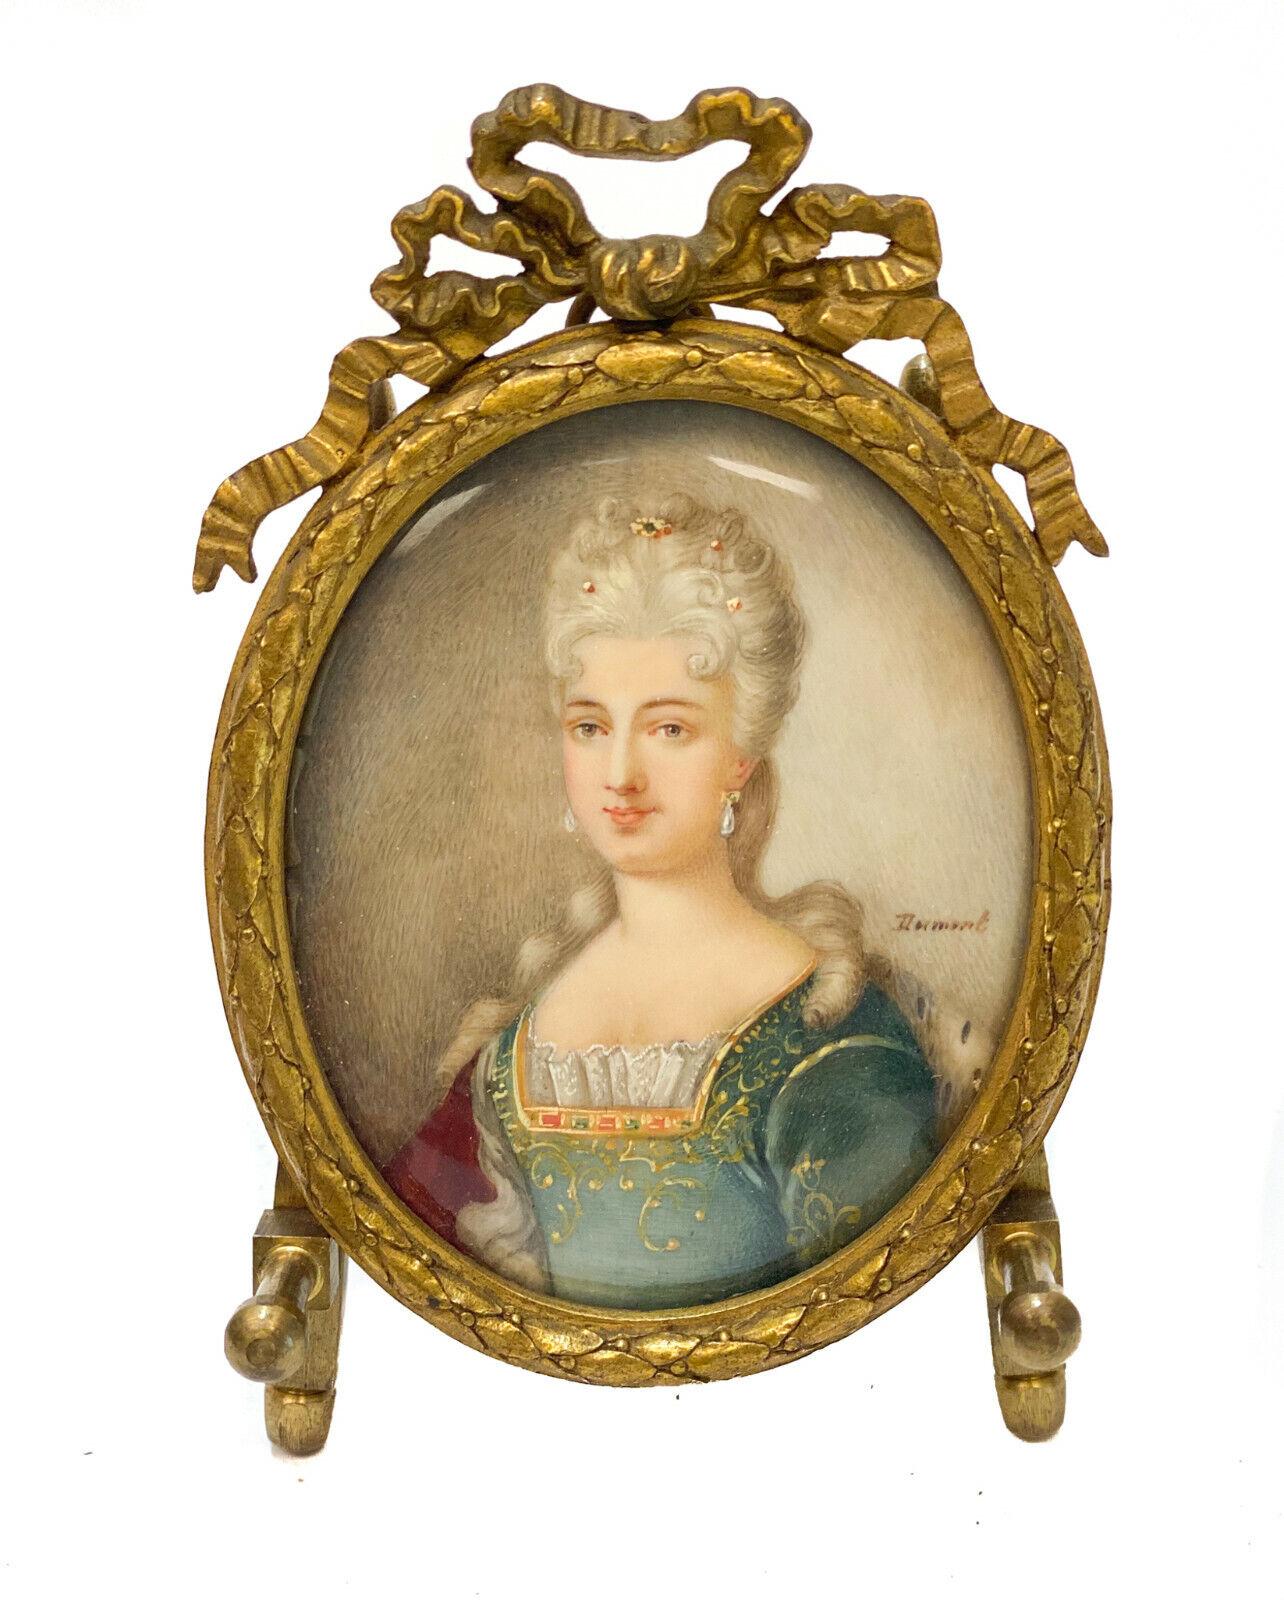 Paar kontinentale Gouache-Miniaturporträts einer Beauties aus dem 19. Jahrhundert

Die Porträts zeigen weißhaarige Schönheiten in königlichen Spitzen- und Samtgewändern. Auf einem der Porträts ist der Künstler mit 